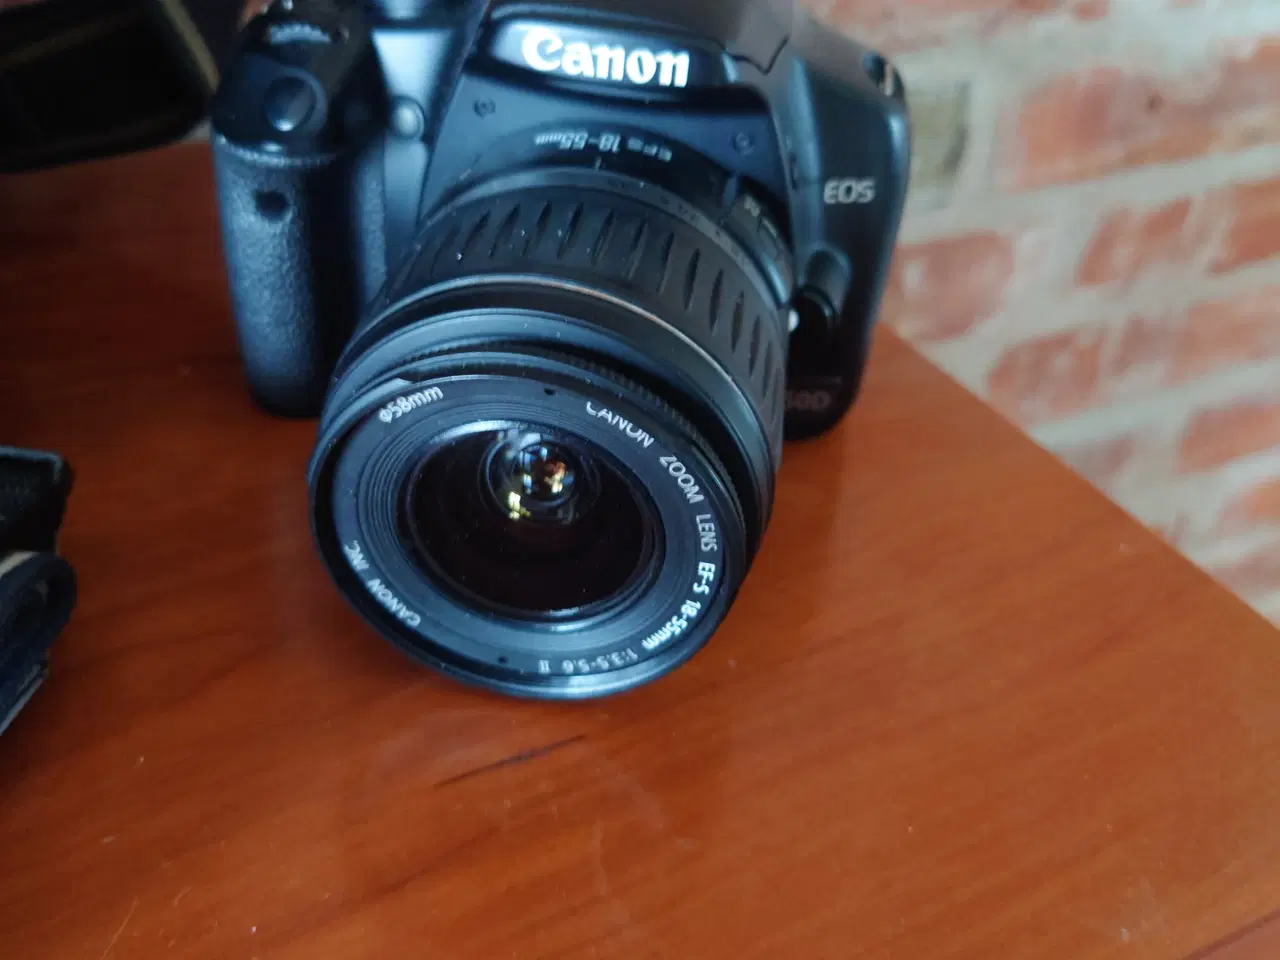 Billede 2 - Canon 450d 4gb ram, 18-55 mm objekt og taske 